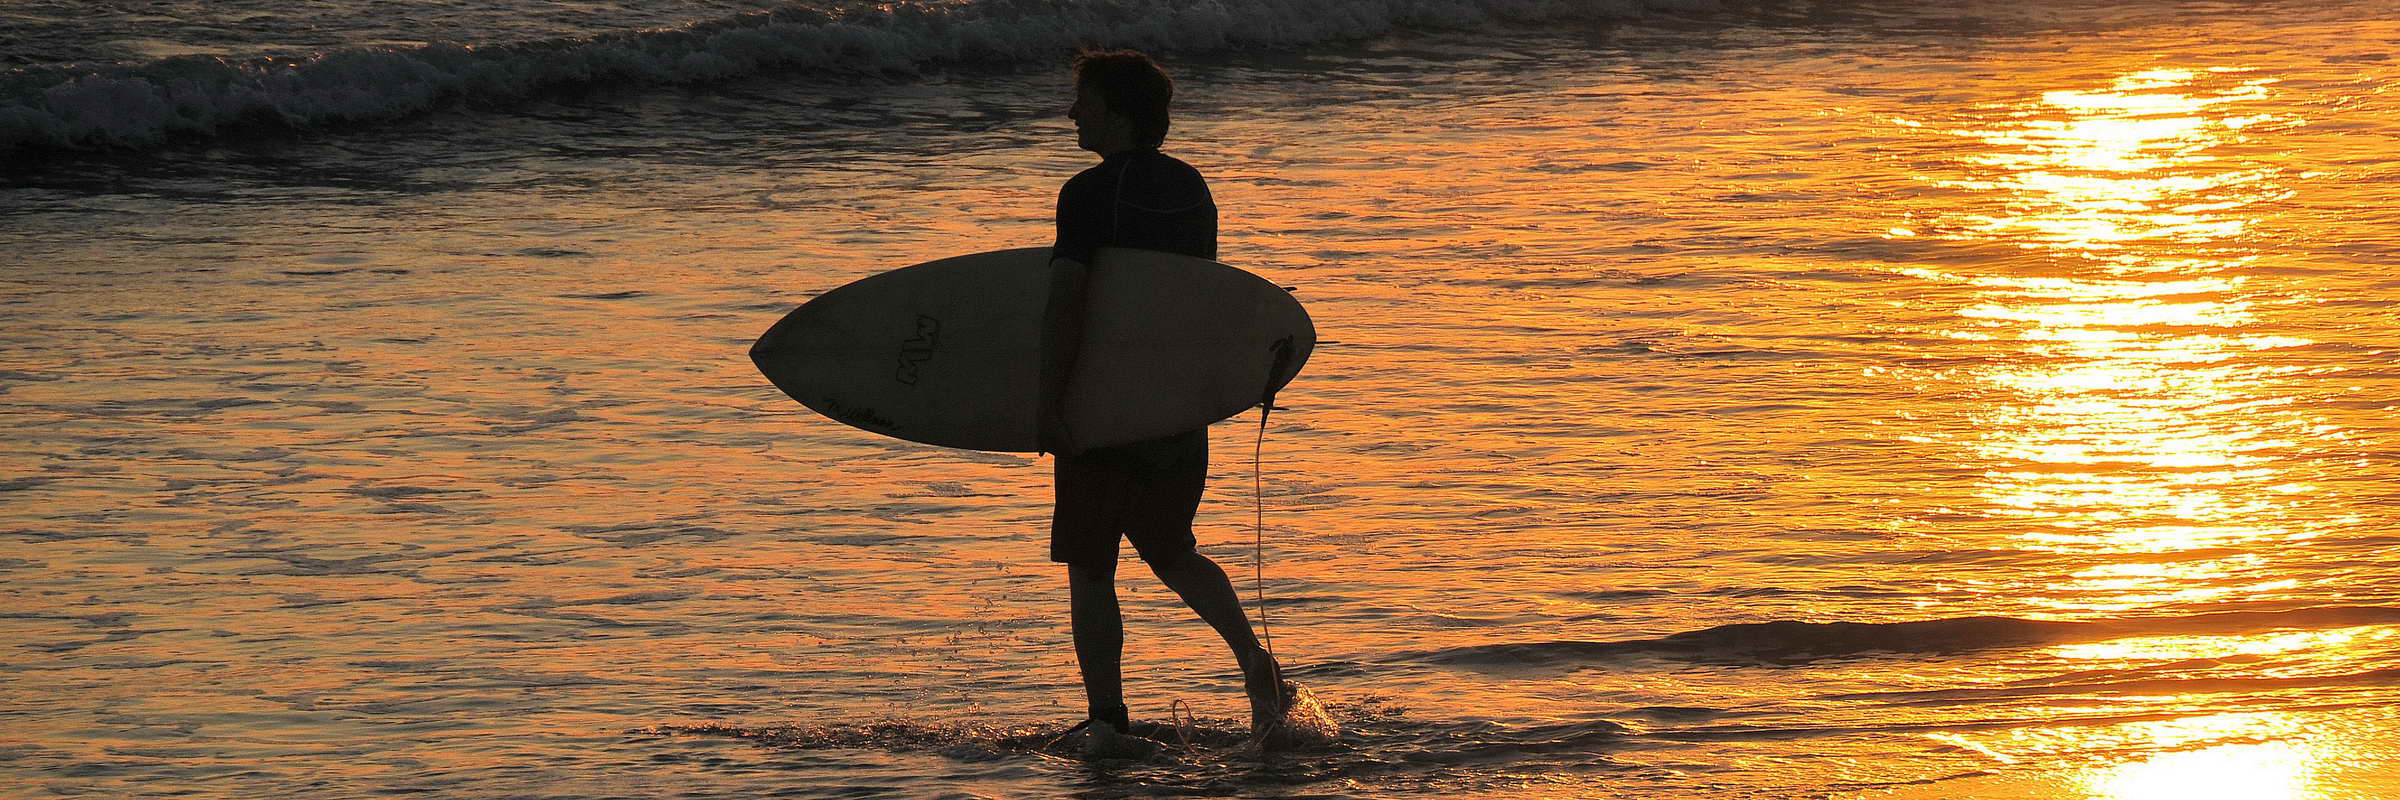 Starke Brandung und ideale Wellen machen den weitläufigen Kuta Beach zu einem der beliebtesten Surfabschnitte auf Bali.